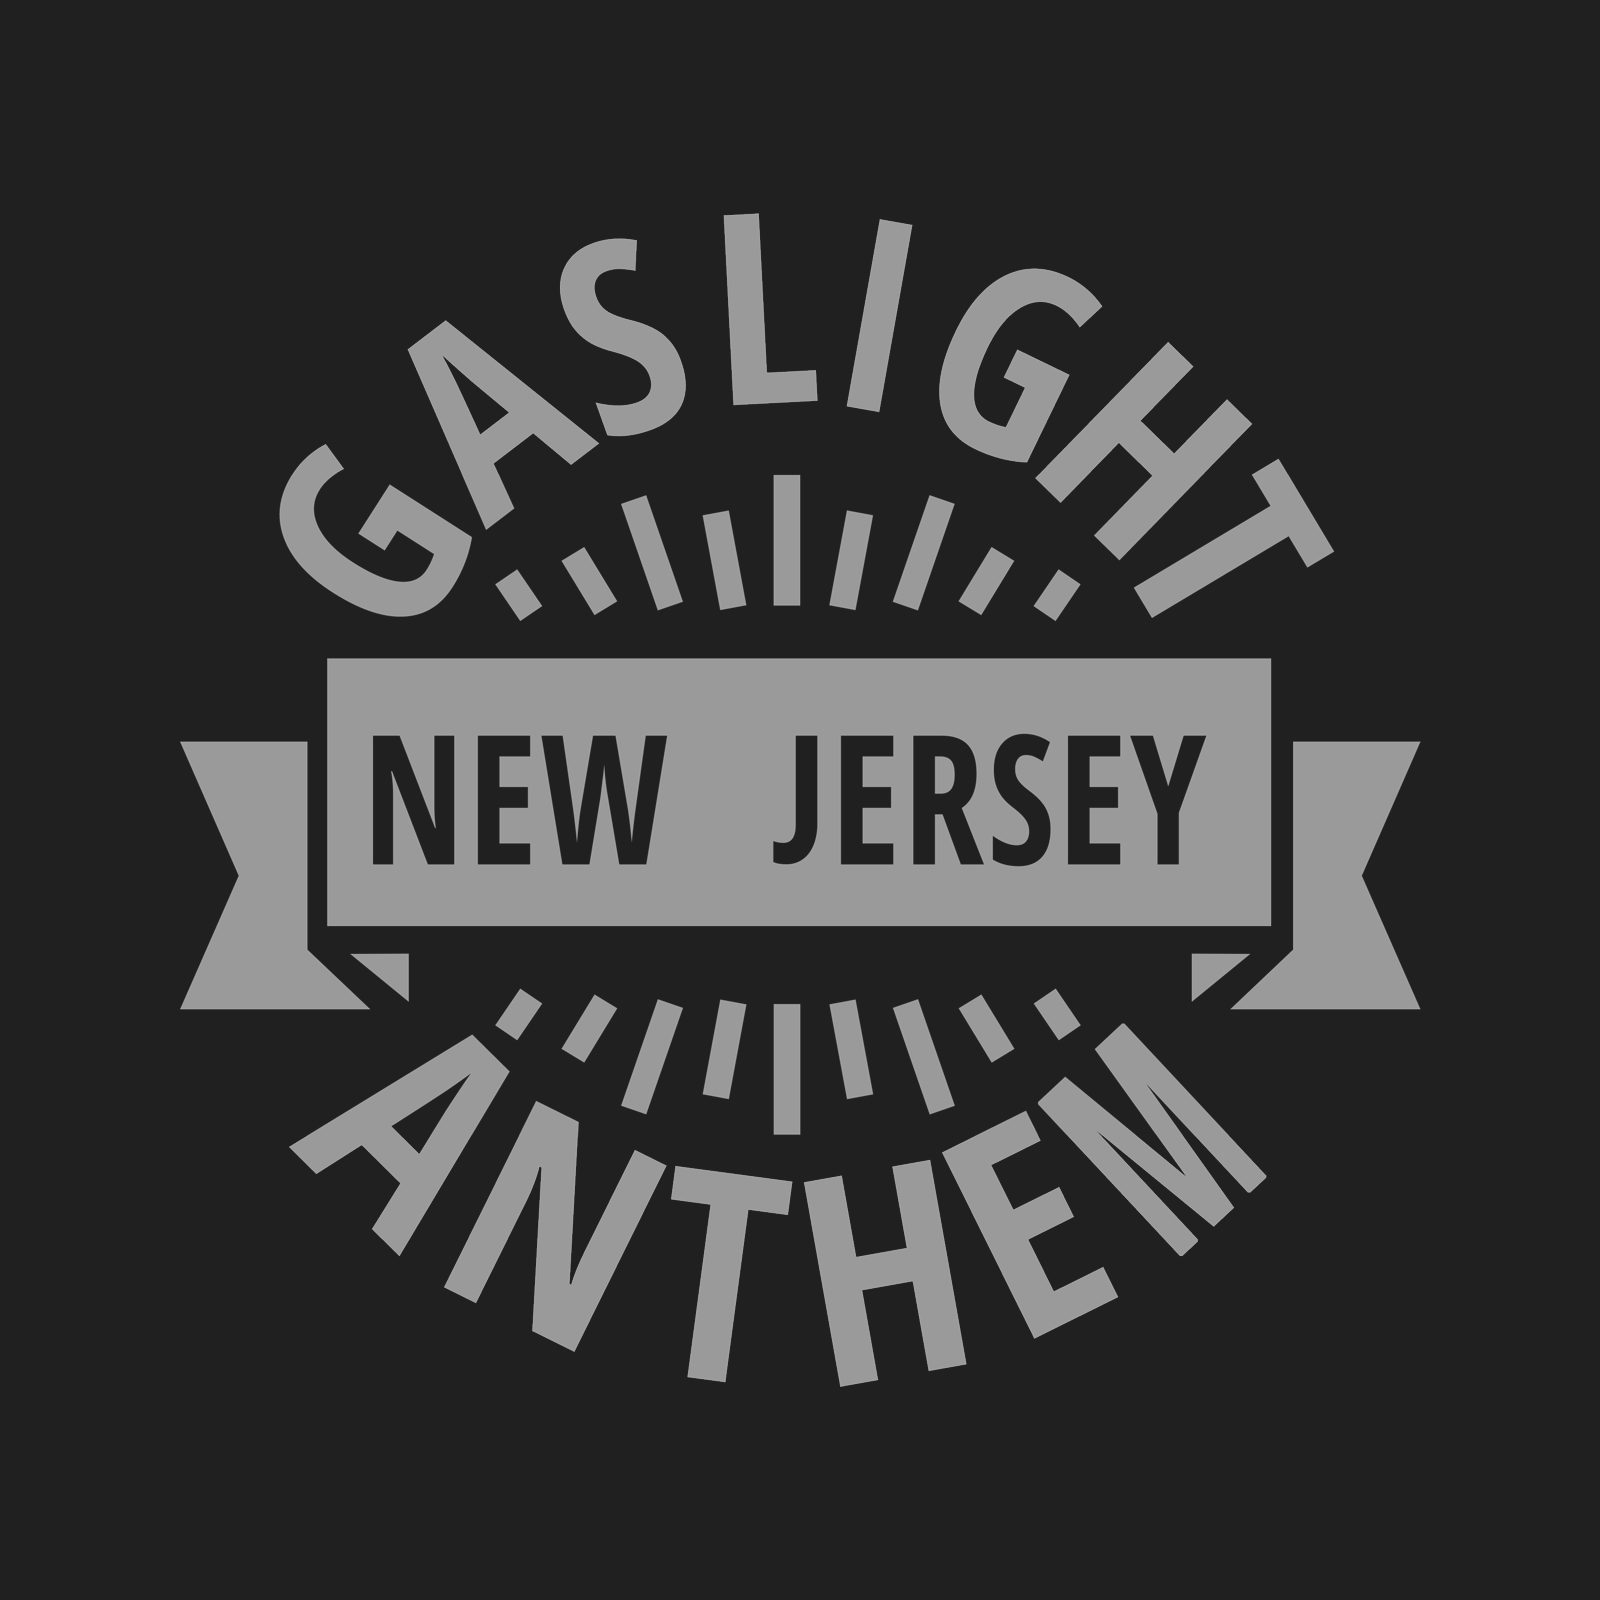 gaslight anthem skull t shirt